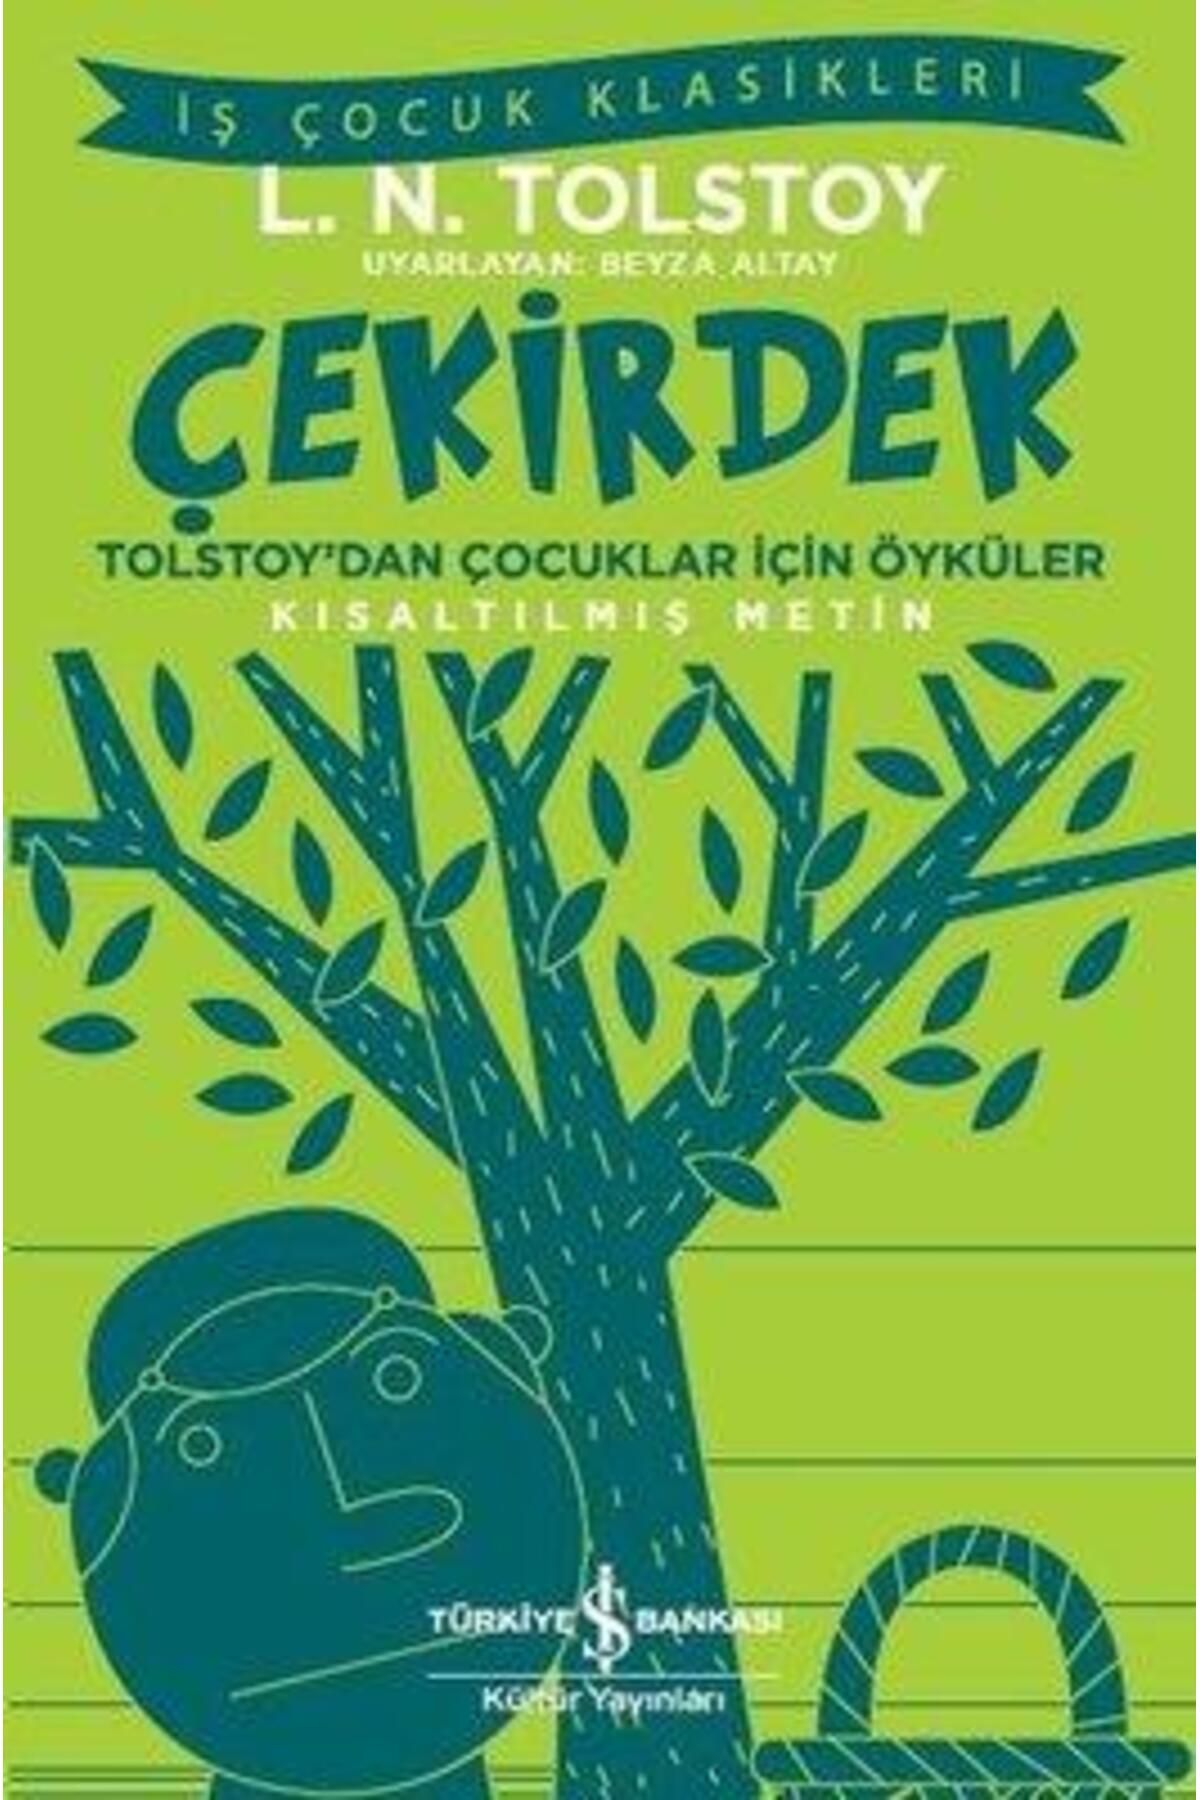 Türkiye İş Bankası Kültür Yayınları Çekirdek-tolstay'dan Çocuklar Için Öyküler